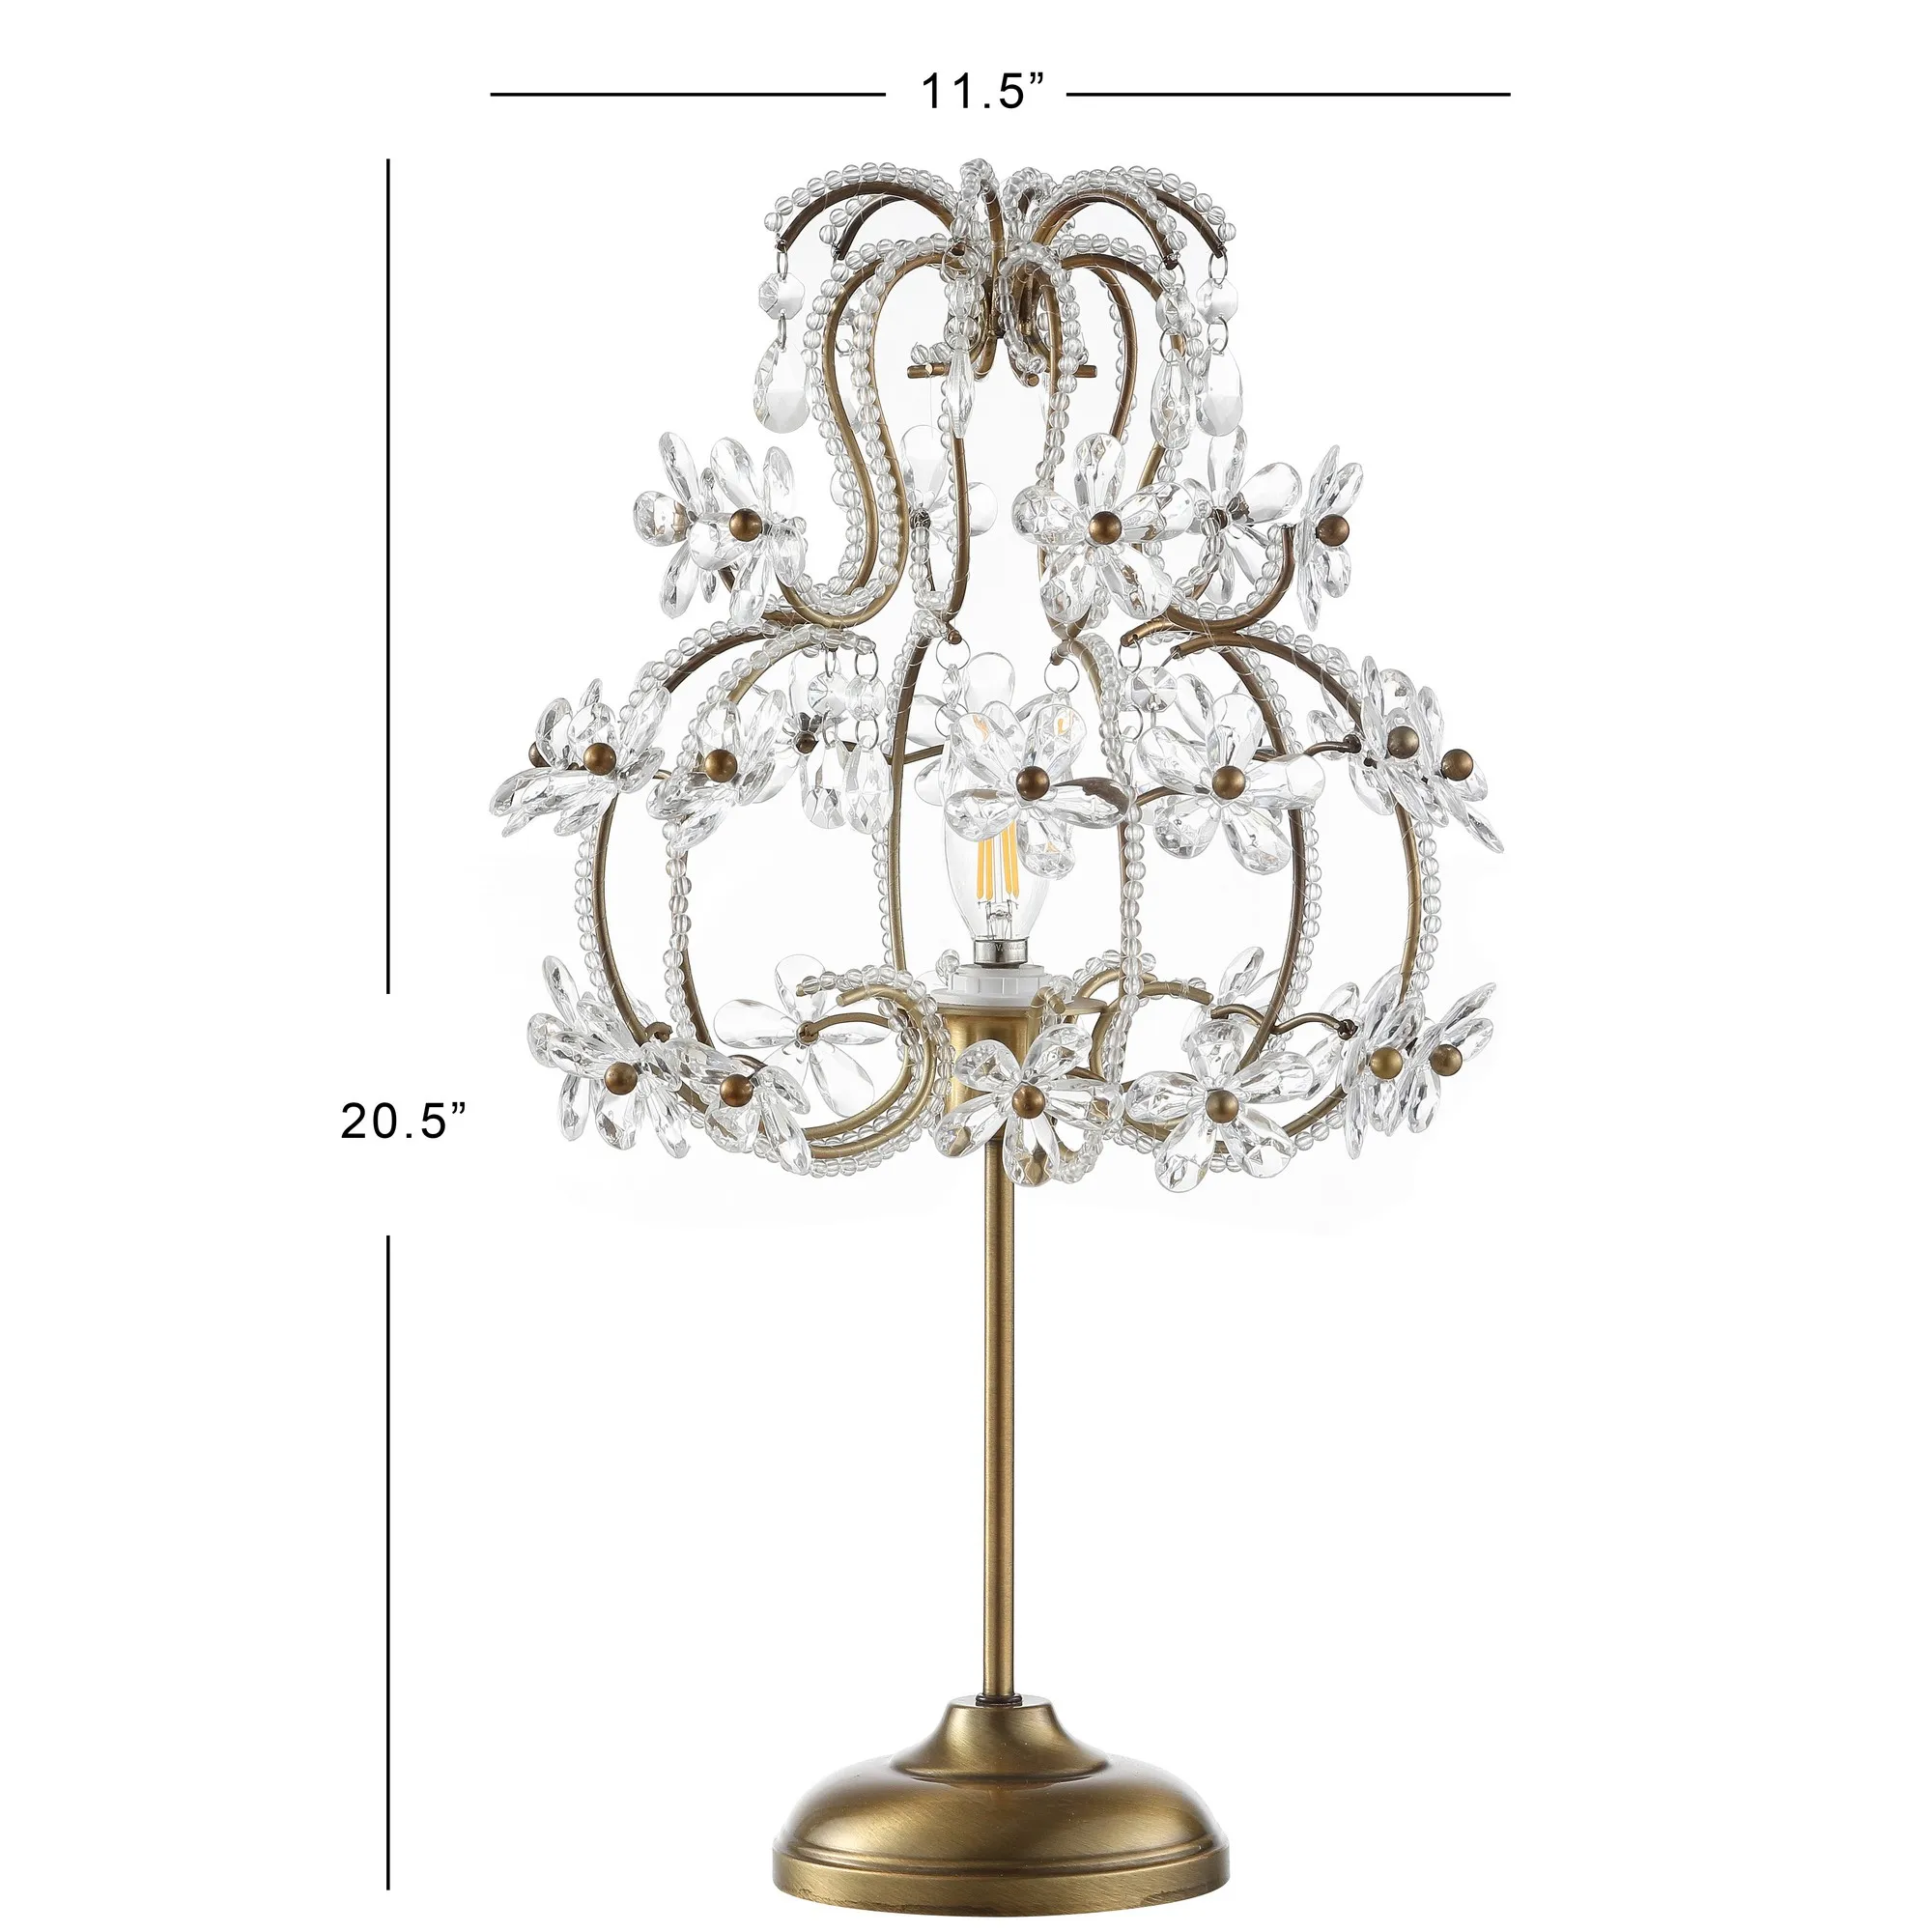 Clara 20.5" Crystal Flower Beaded Girandole Metal/Acrylic LED Table Lamp, Brass Gold/Clear